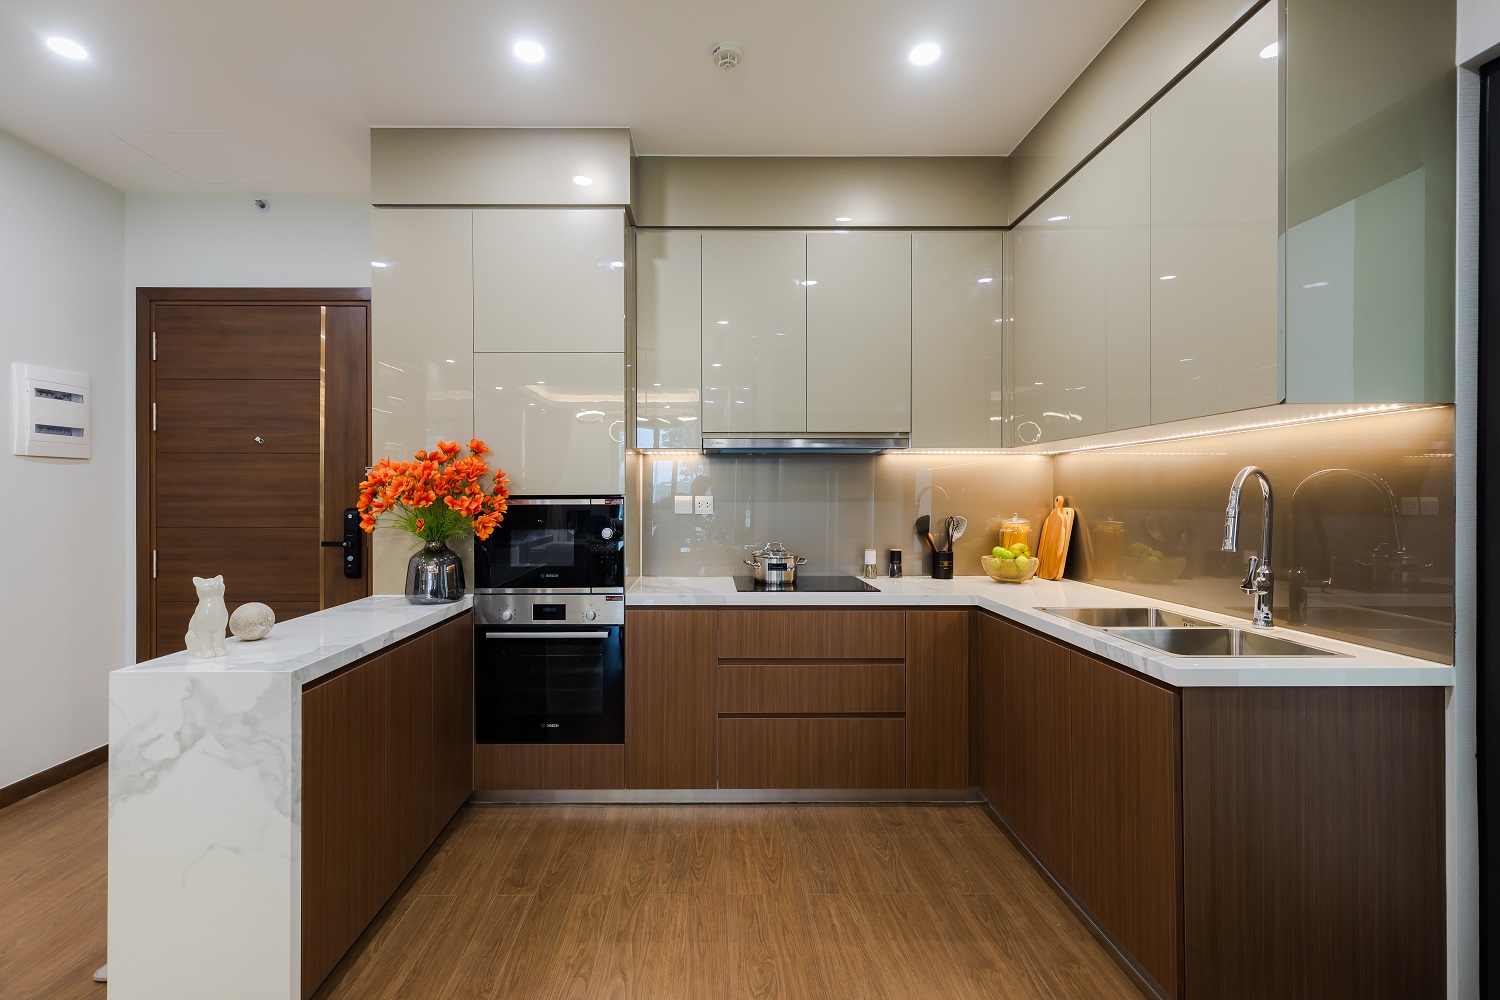 Không gian bếp hiện đại với màu sắc hài hòa, trang nhã và thiết bị bàn giao cao cấp: bếp, hút mùi mang thương hiệu Bosch